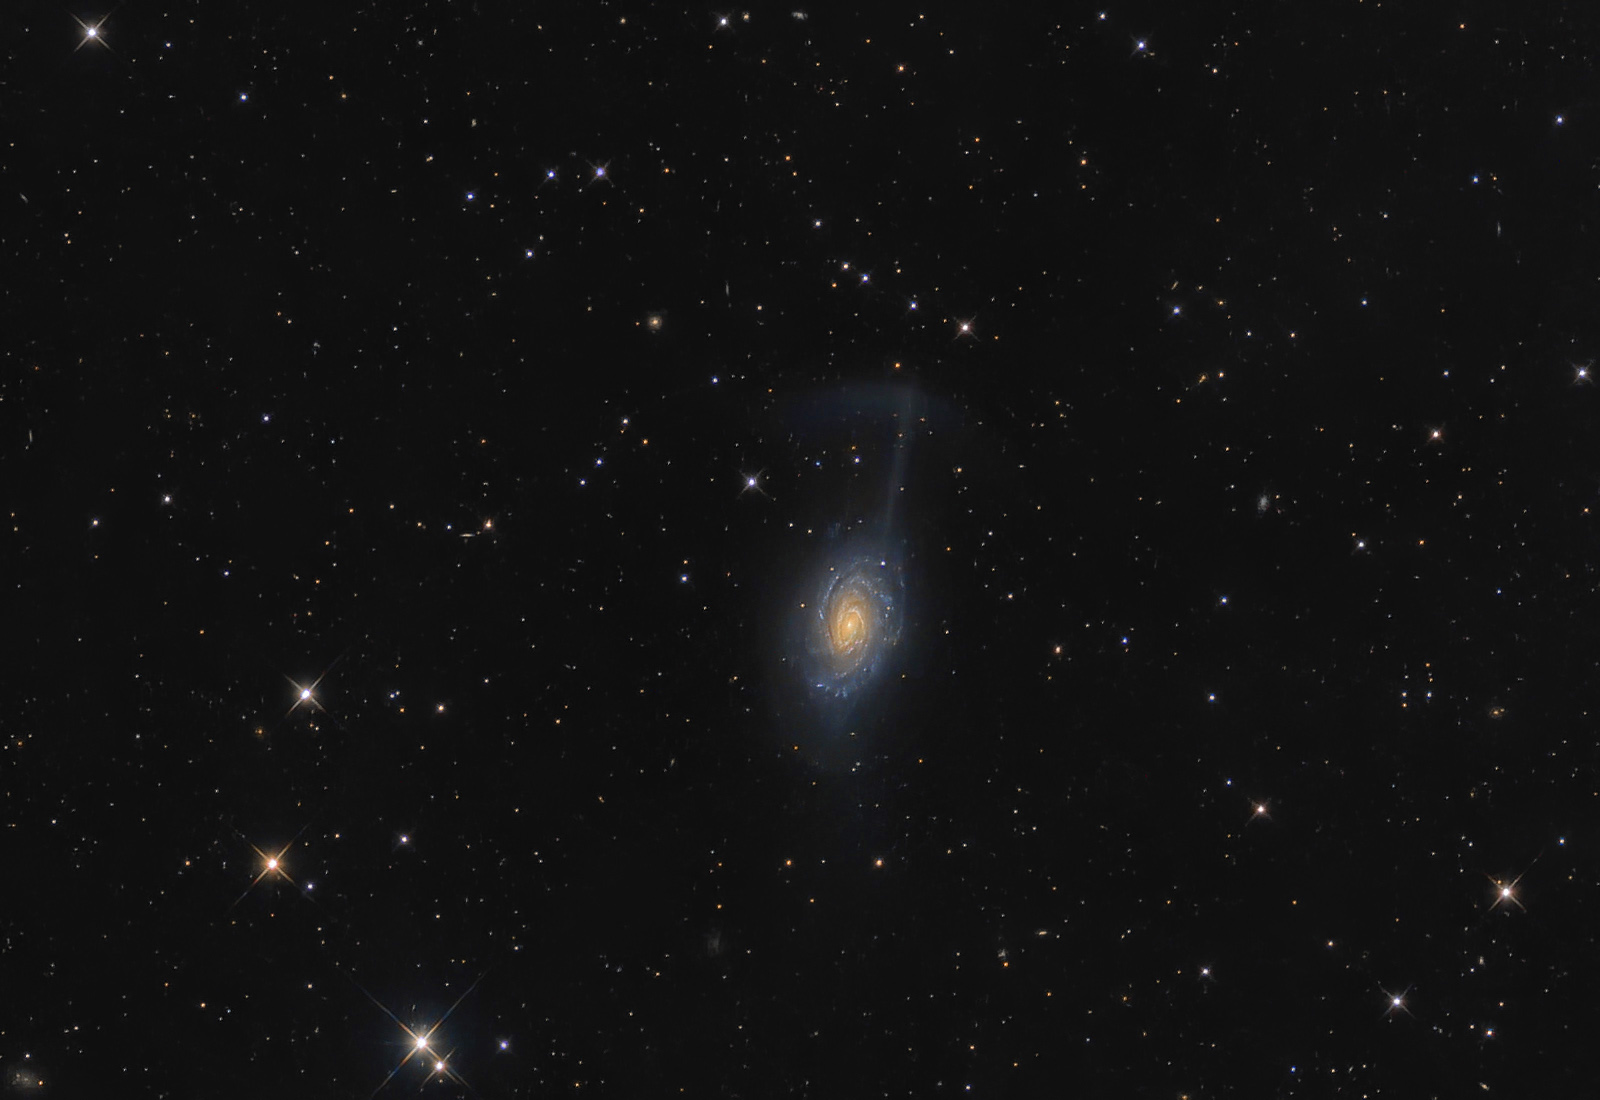 NGC 4651